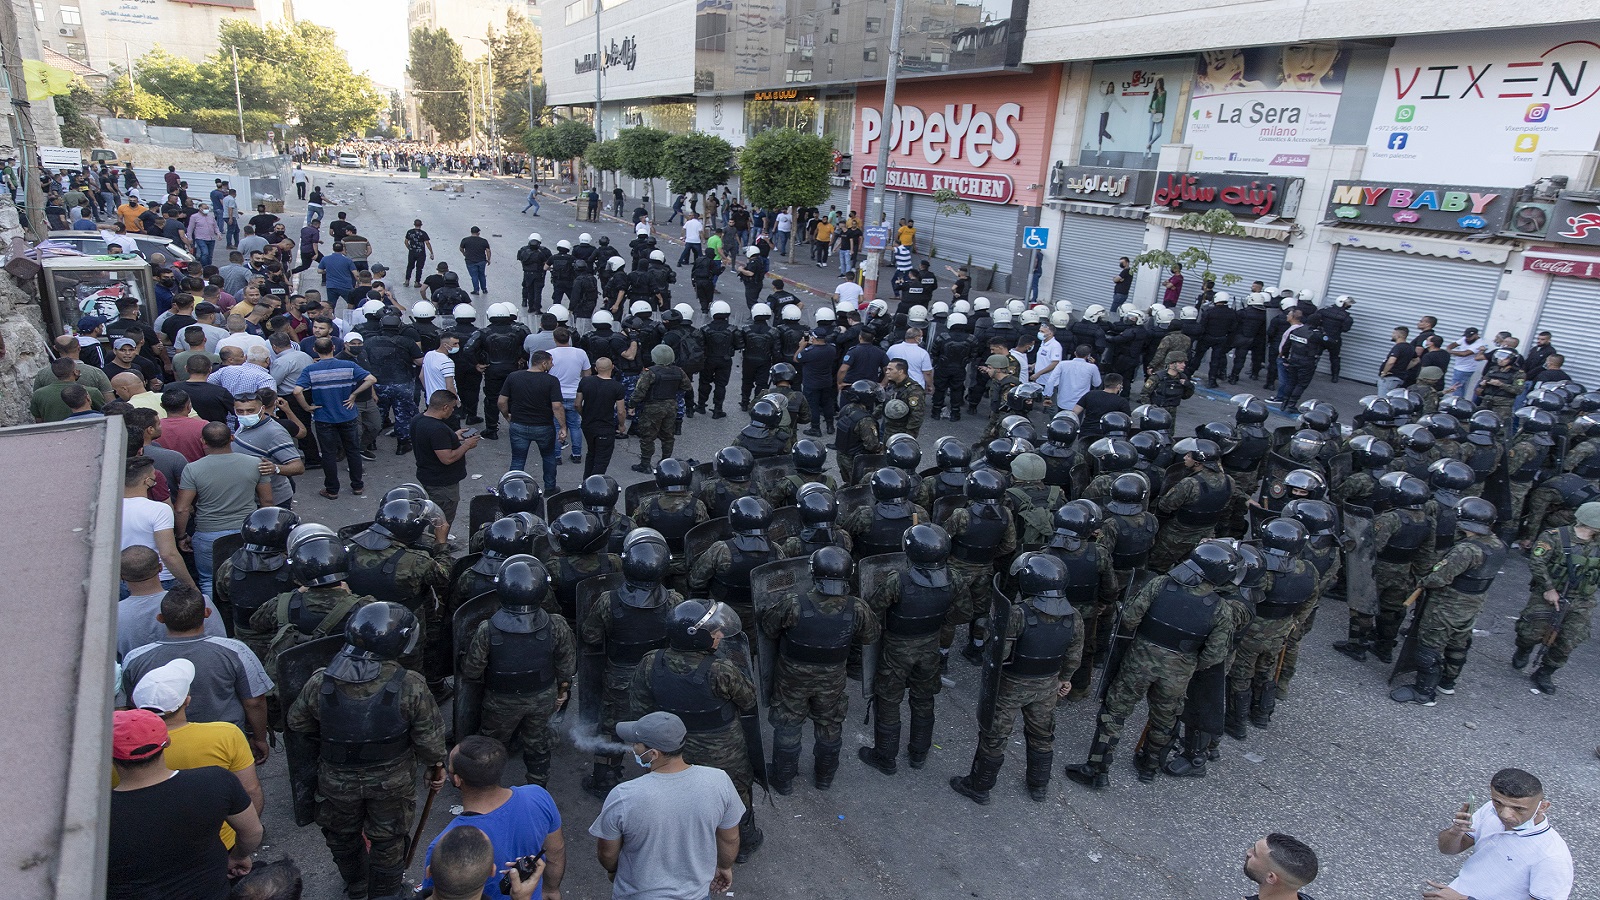 "هيومن رايتس ووتش": هكذا تعذب السلطة الفلسطينية المعتقلين لديها!